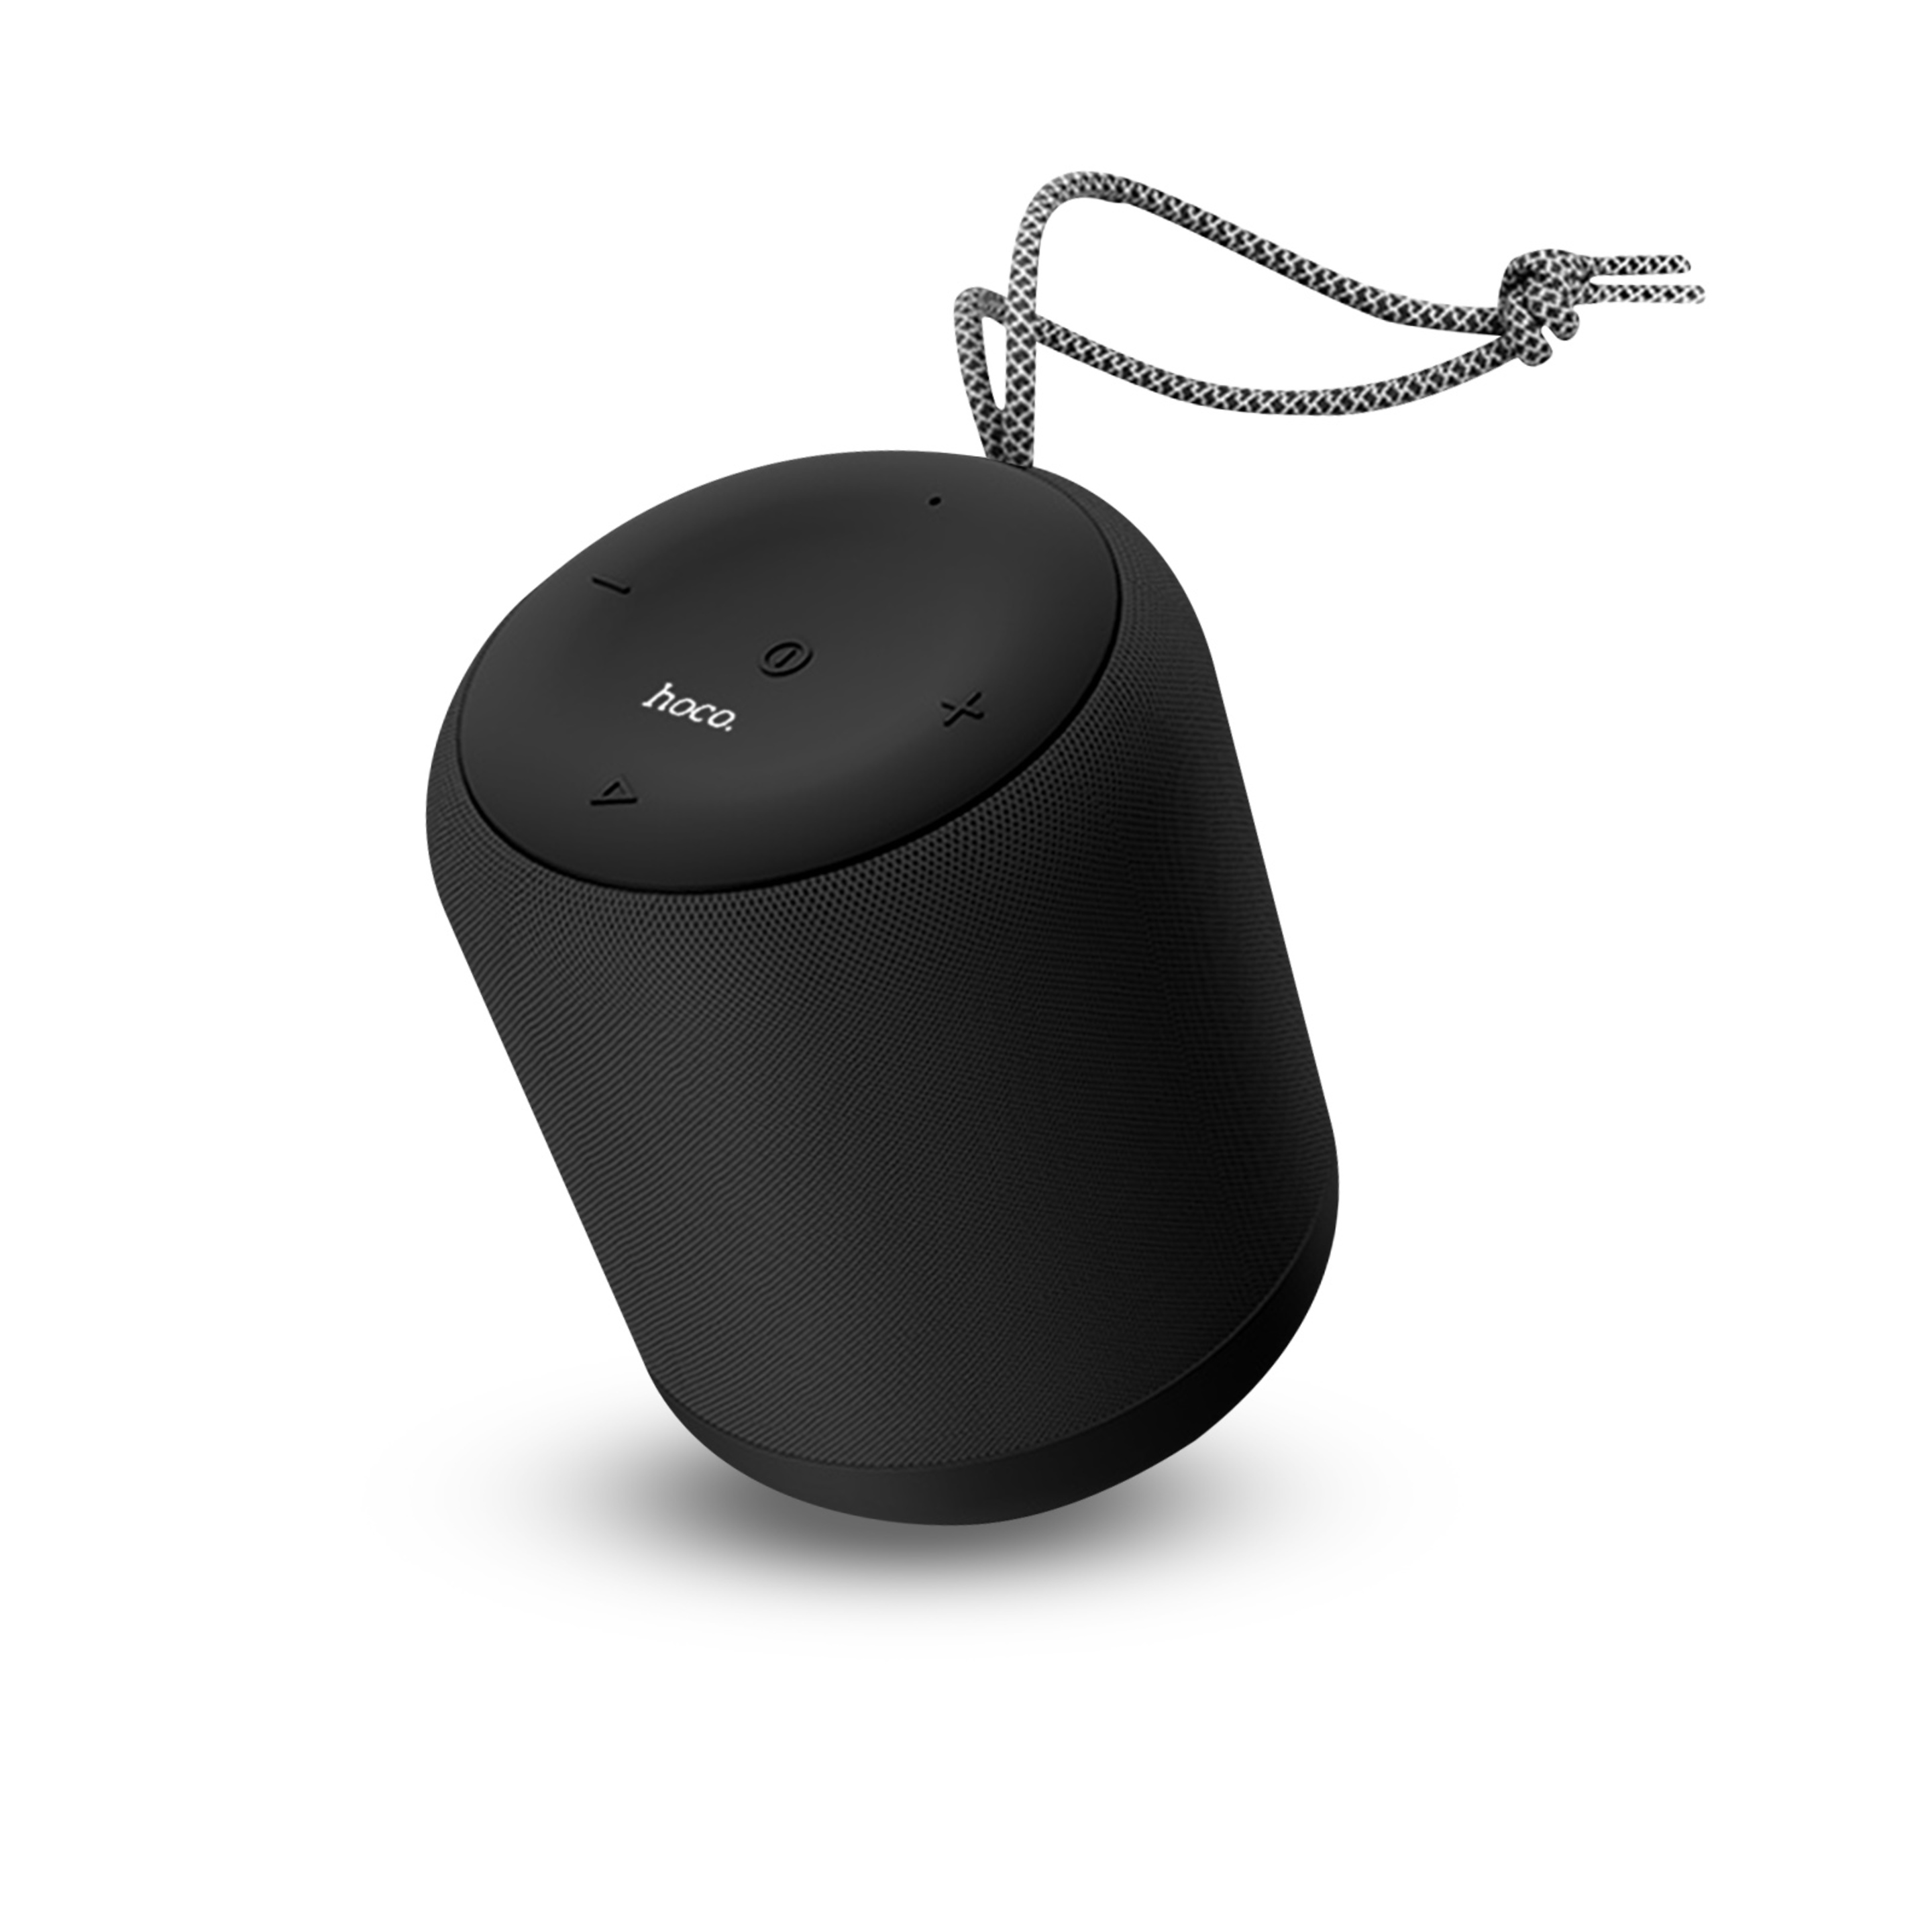 Altavoz Bluetooth Sonido 360° Potencia 5w Portátil De Hoco Y Pulsera